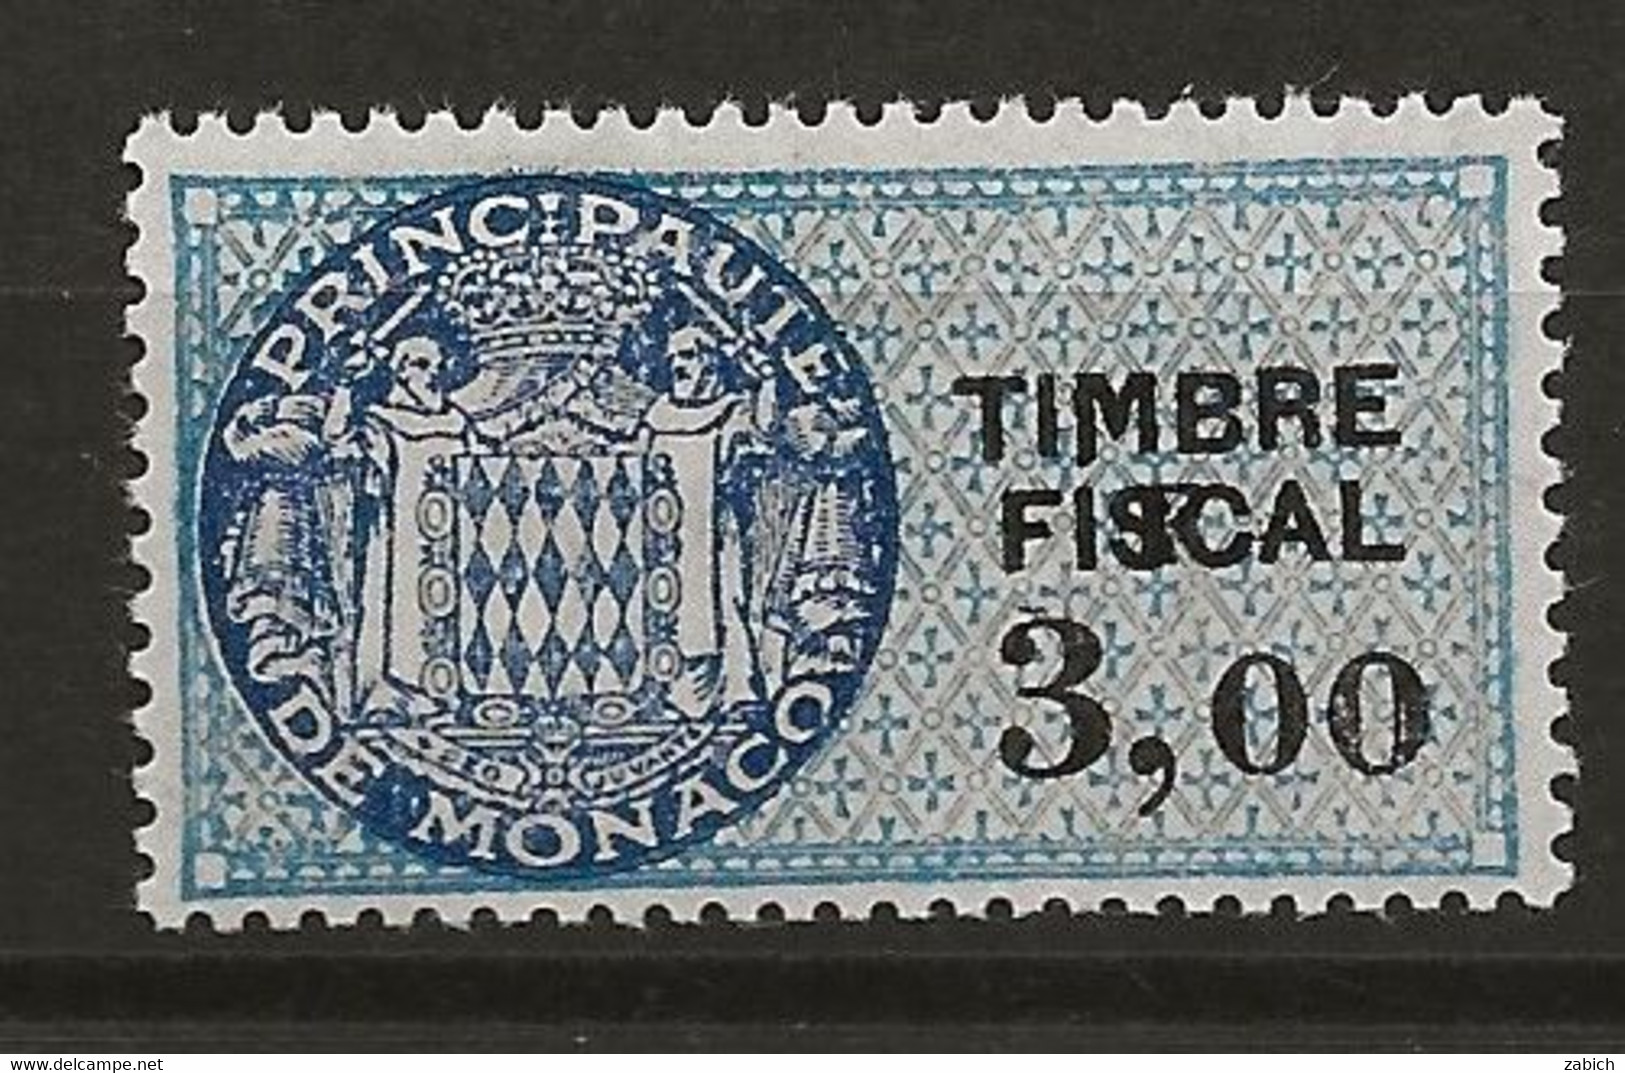 TIMBRES FISCAUX DE MONACO SERIE UNIFIEE  VARIETE F De La Valeur Décalé Sur N° 68 3,F00 Bleu (**) - Revenue